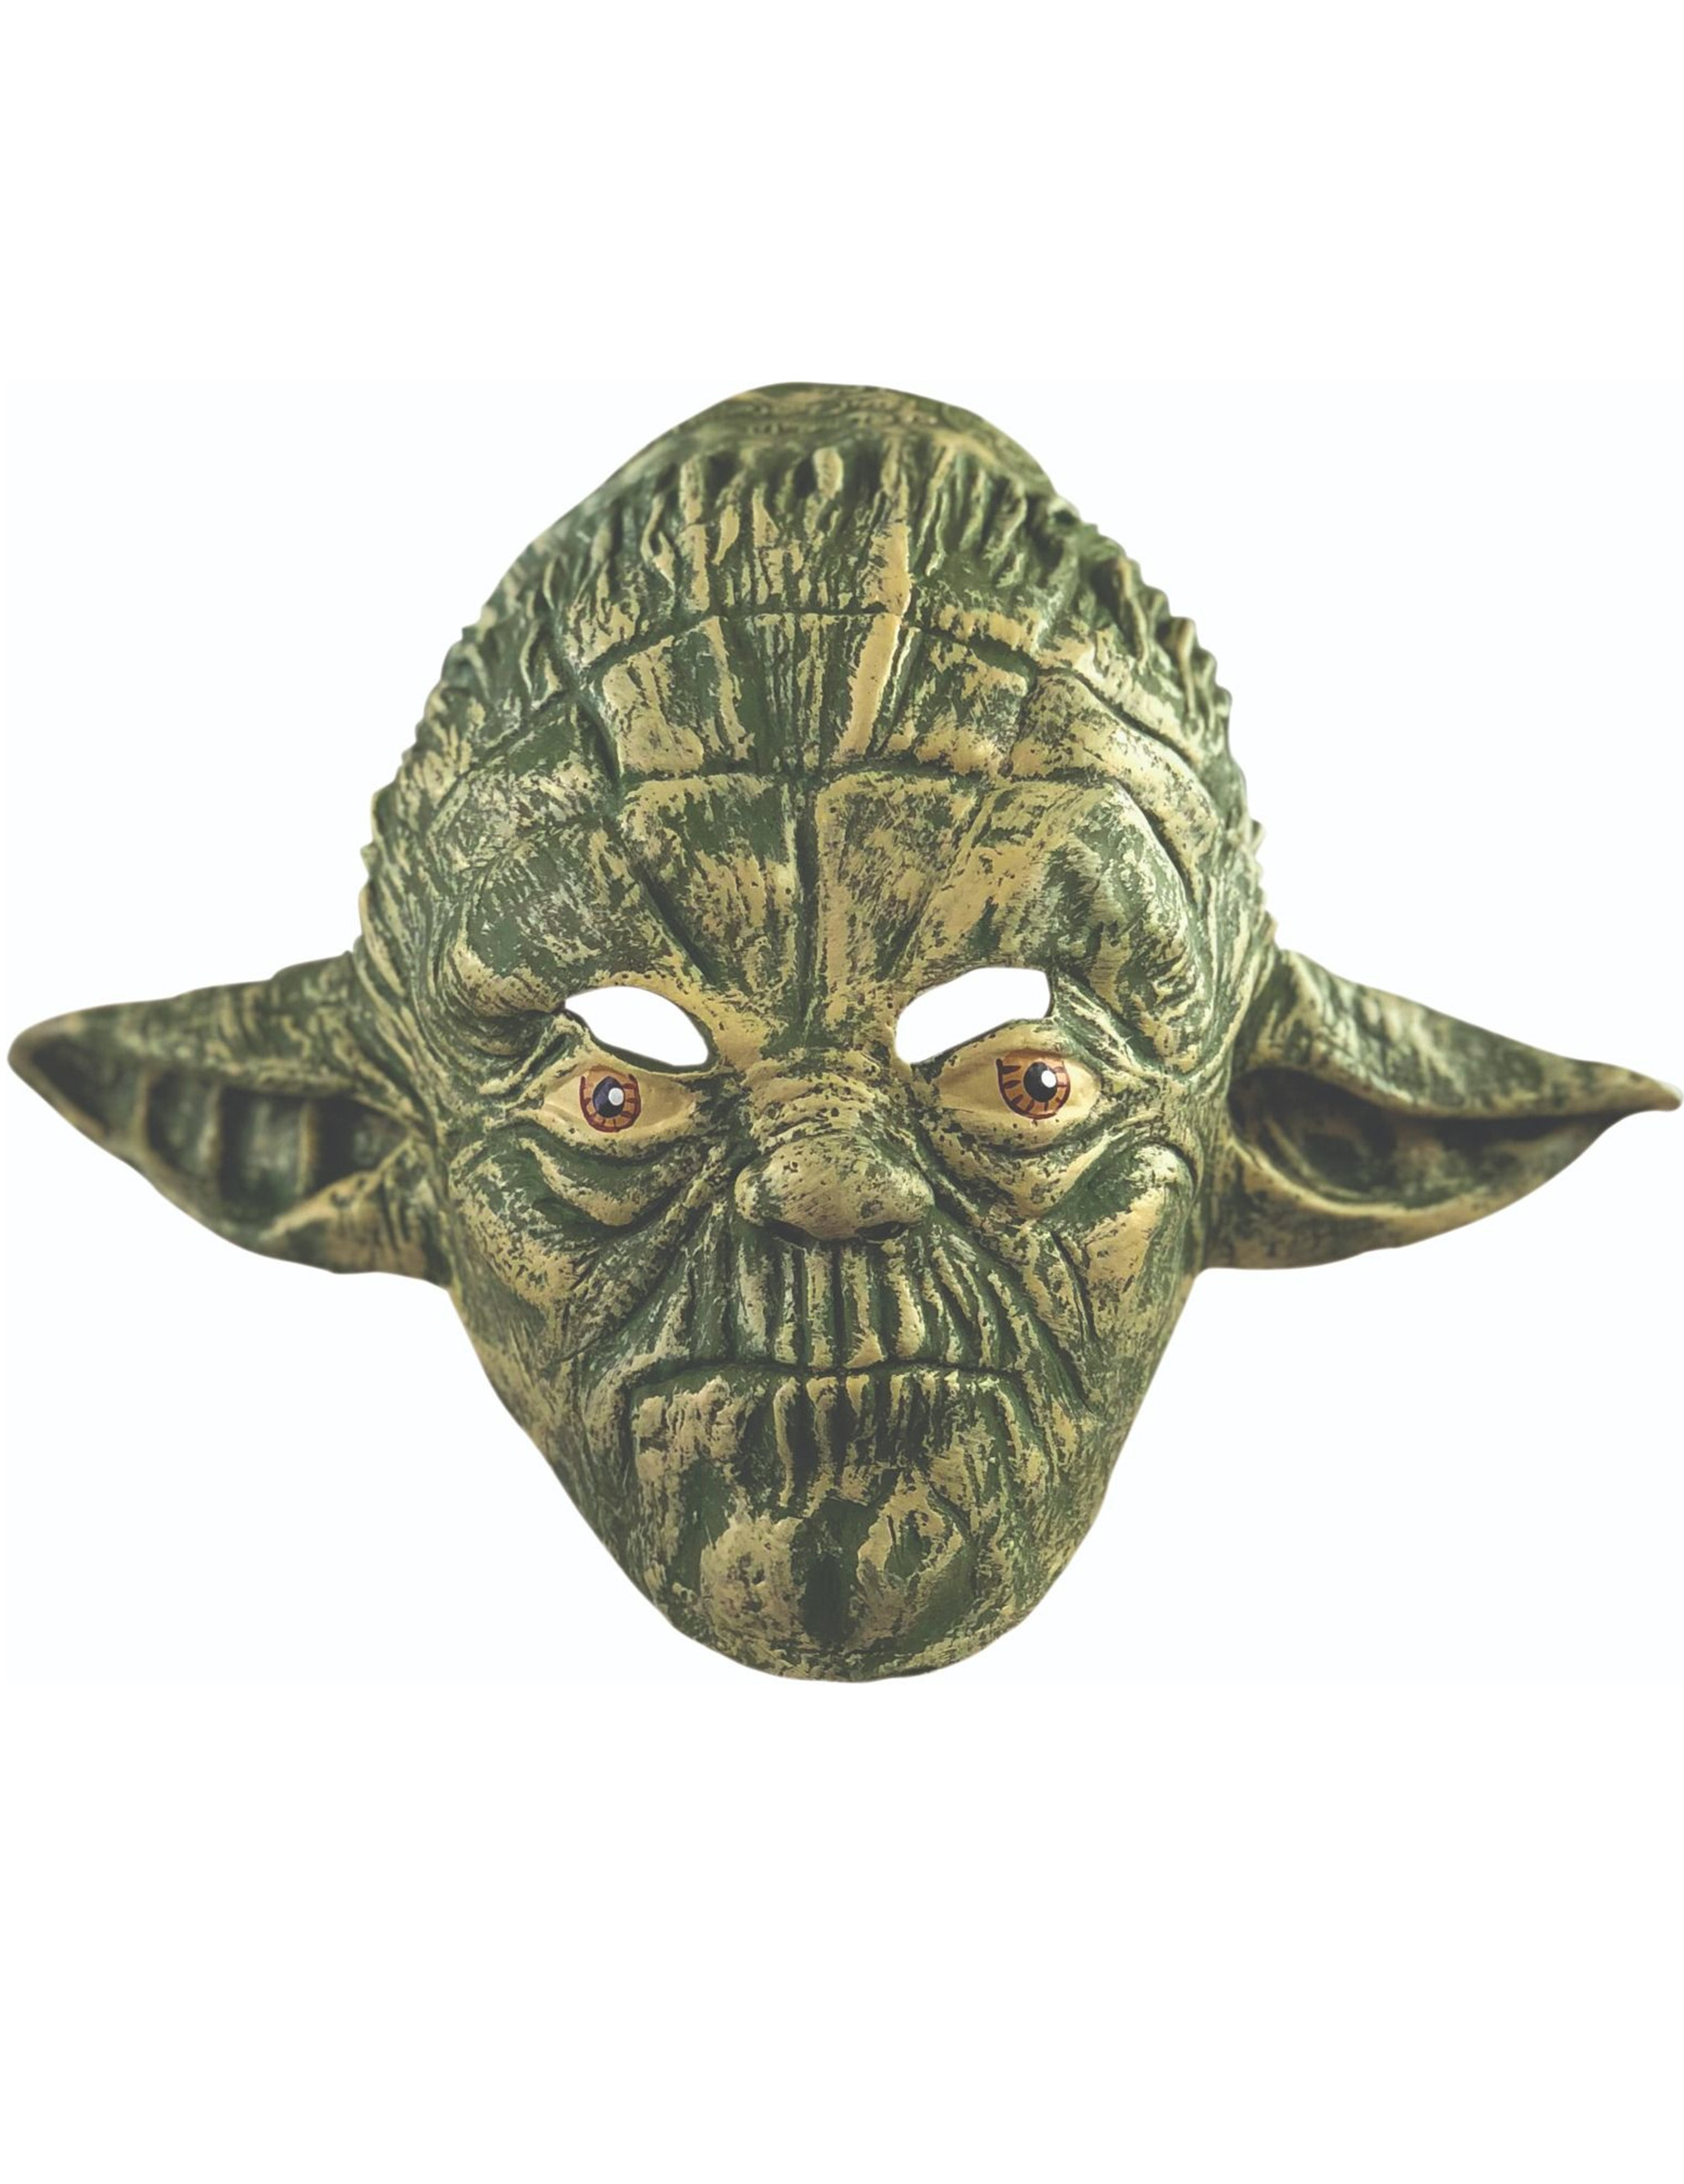 Yoda-Erwachsenenmaske Star Wars grün von RUBIES FRANCE